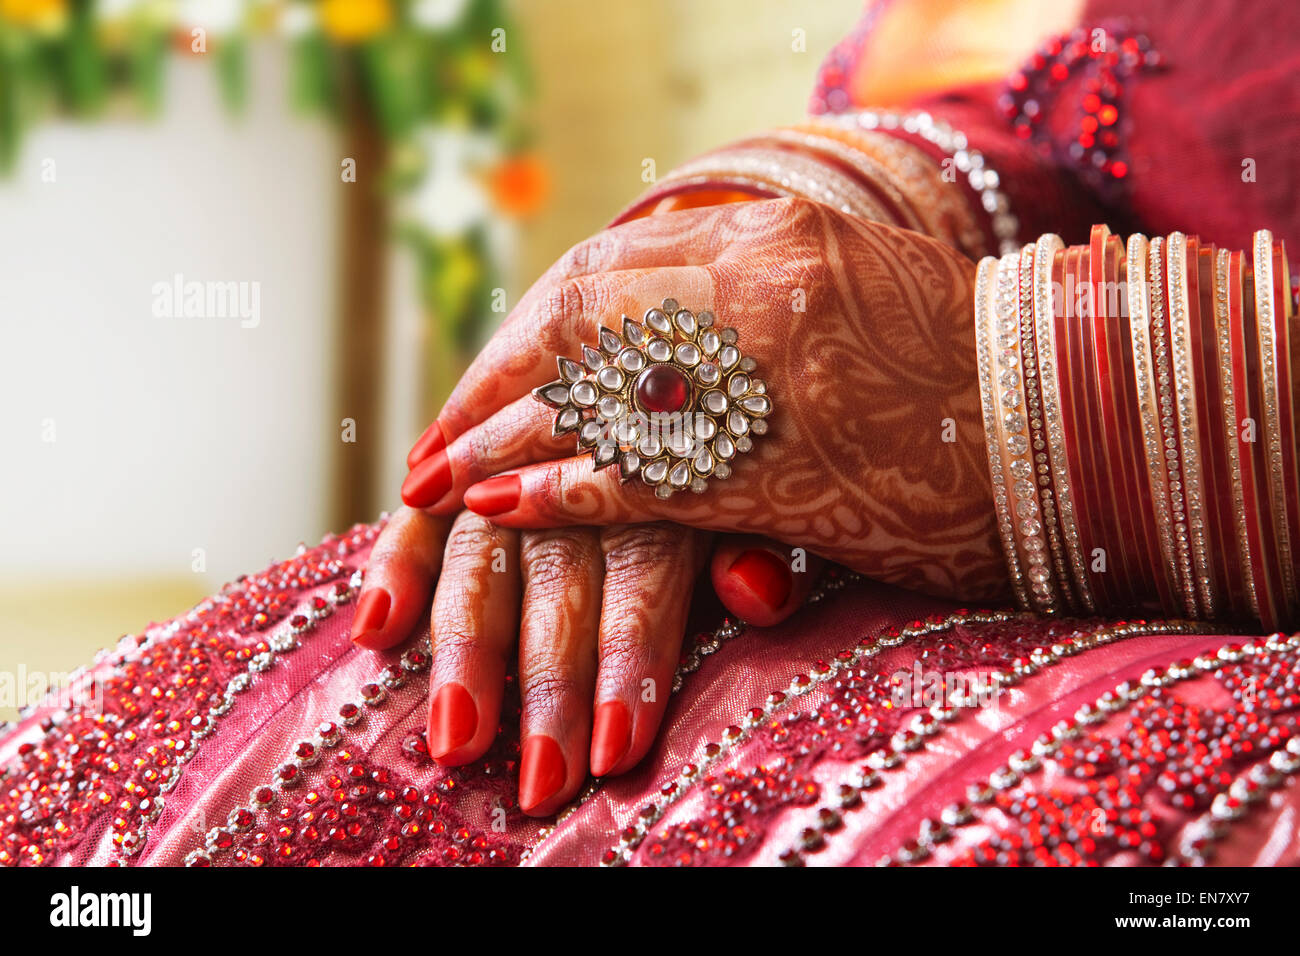 Close-up of a Brides les mains dans l'anneau et les bracelets de mariage Banque D'Images